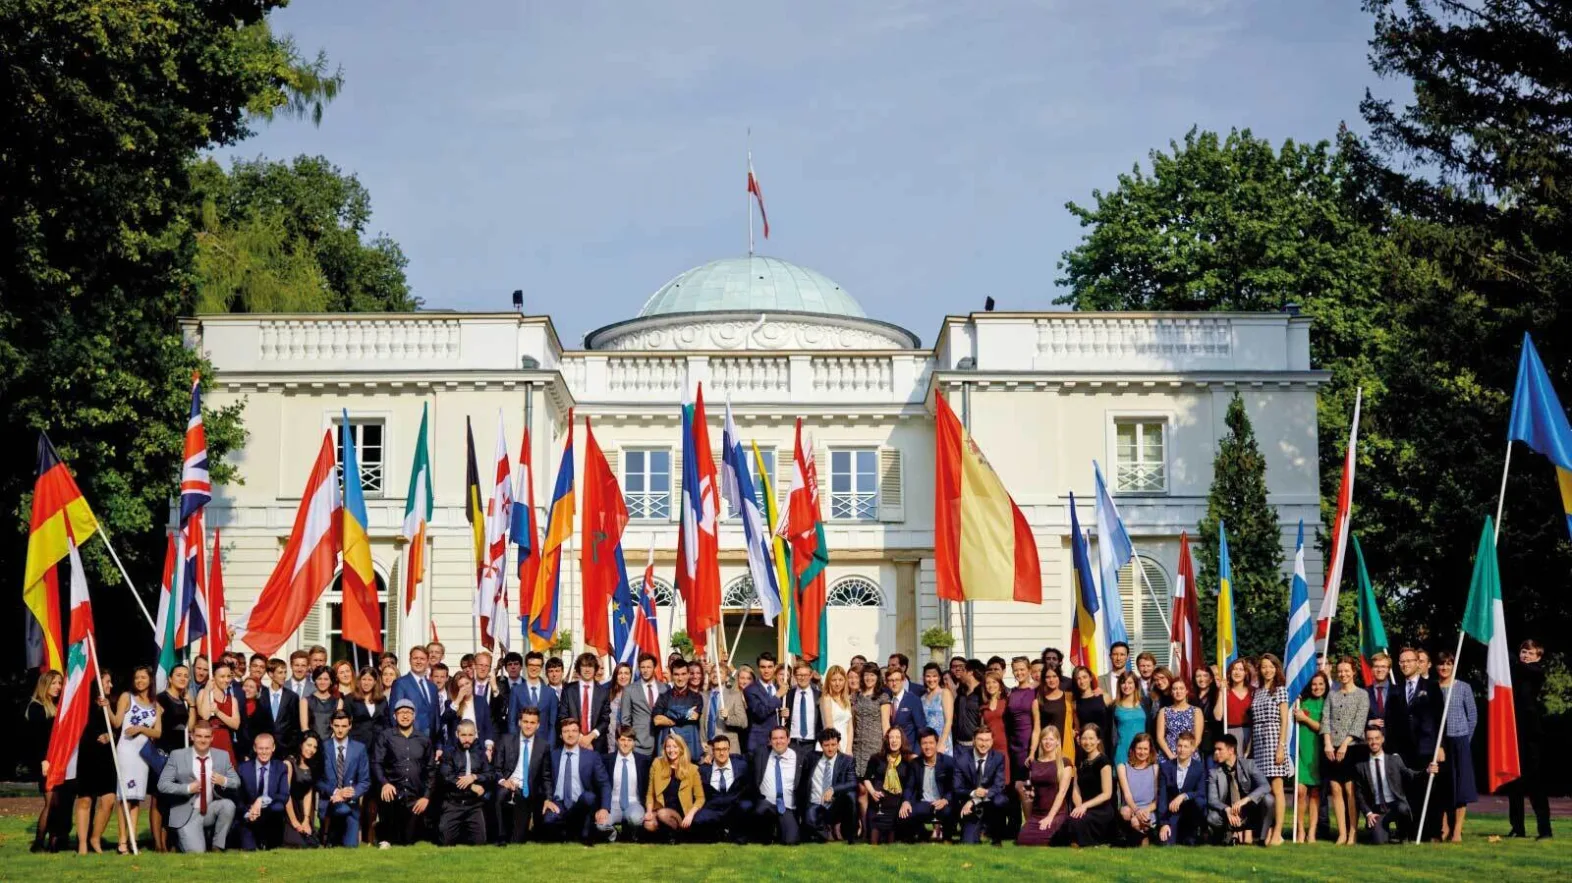 Gruppenfoto von Menschen die mit grossen Flaggen mehrerer Nationen posieren